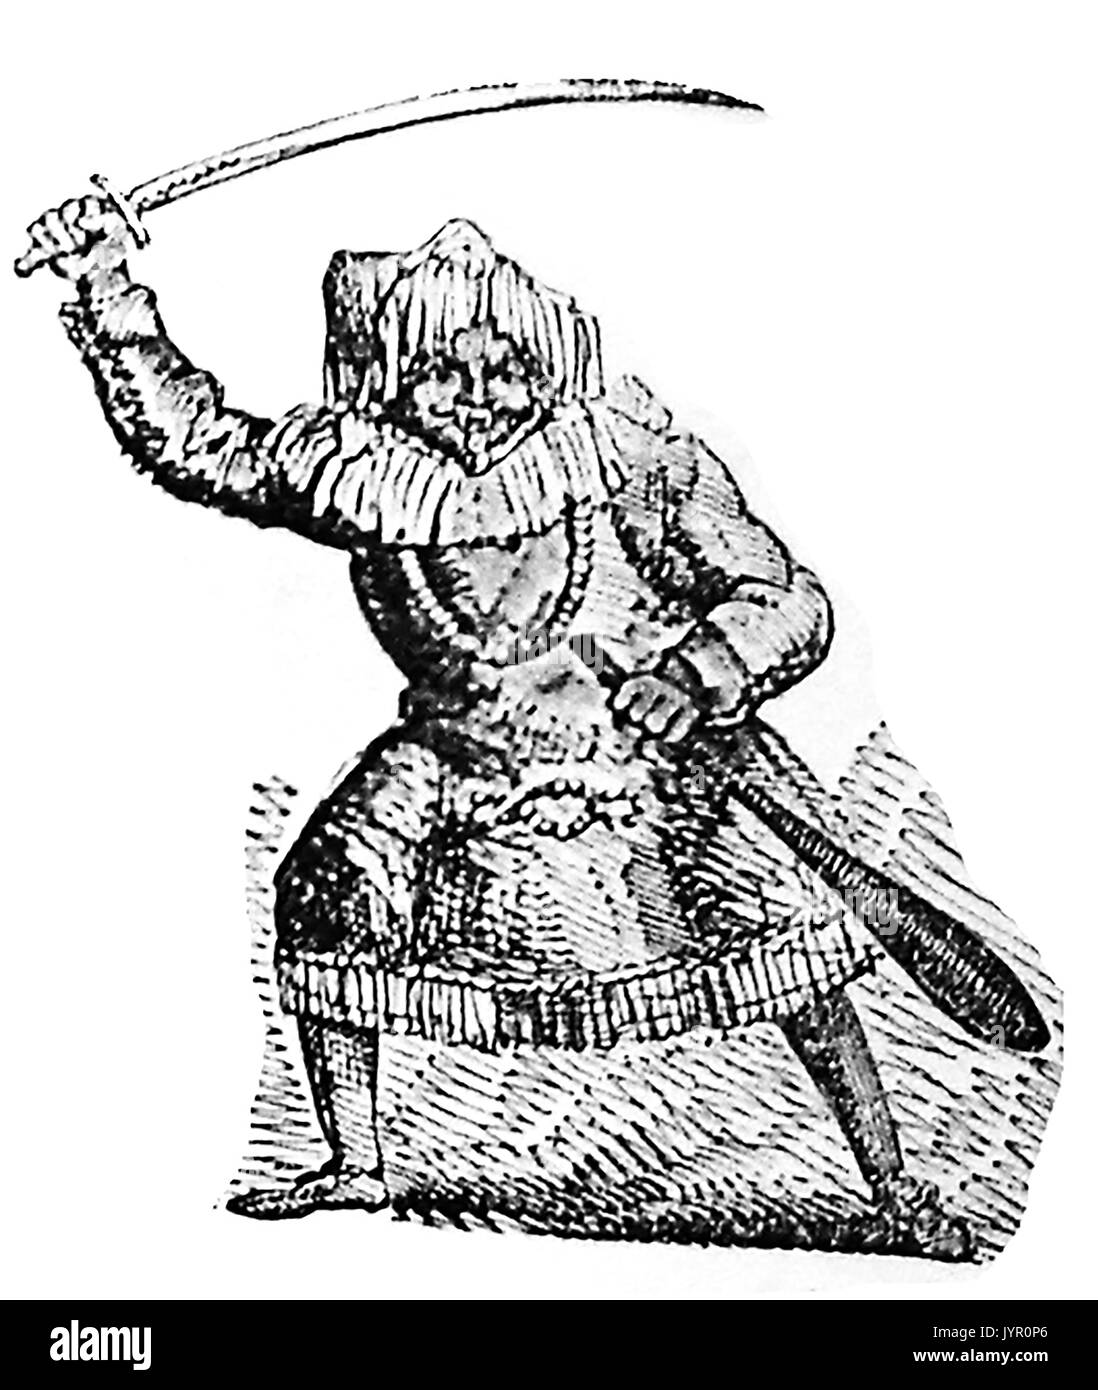 1820 Eine echte UK Messegelände "Freak Show" Charakter wie dem Persischen oder die Malaiische, der sagte, war nicht in der Lage sein, Englisch zu sprechen, bekannt Stockfoto